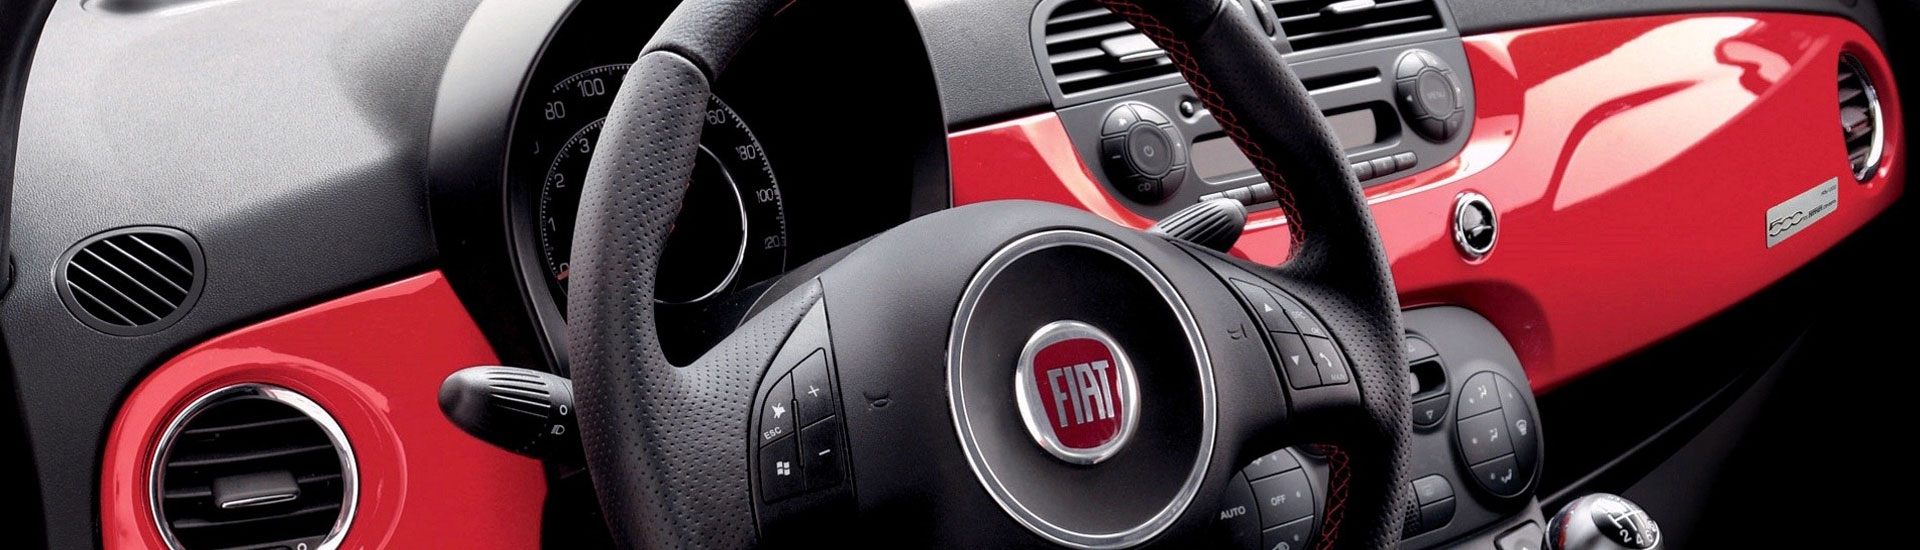 2014 Fiat 500e Custom Dash Kits